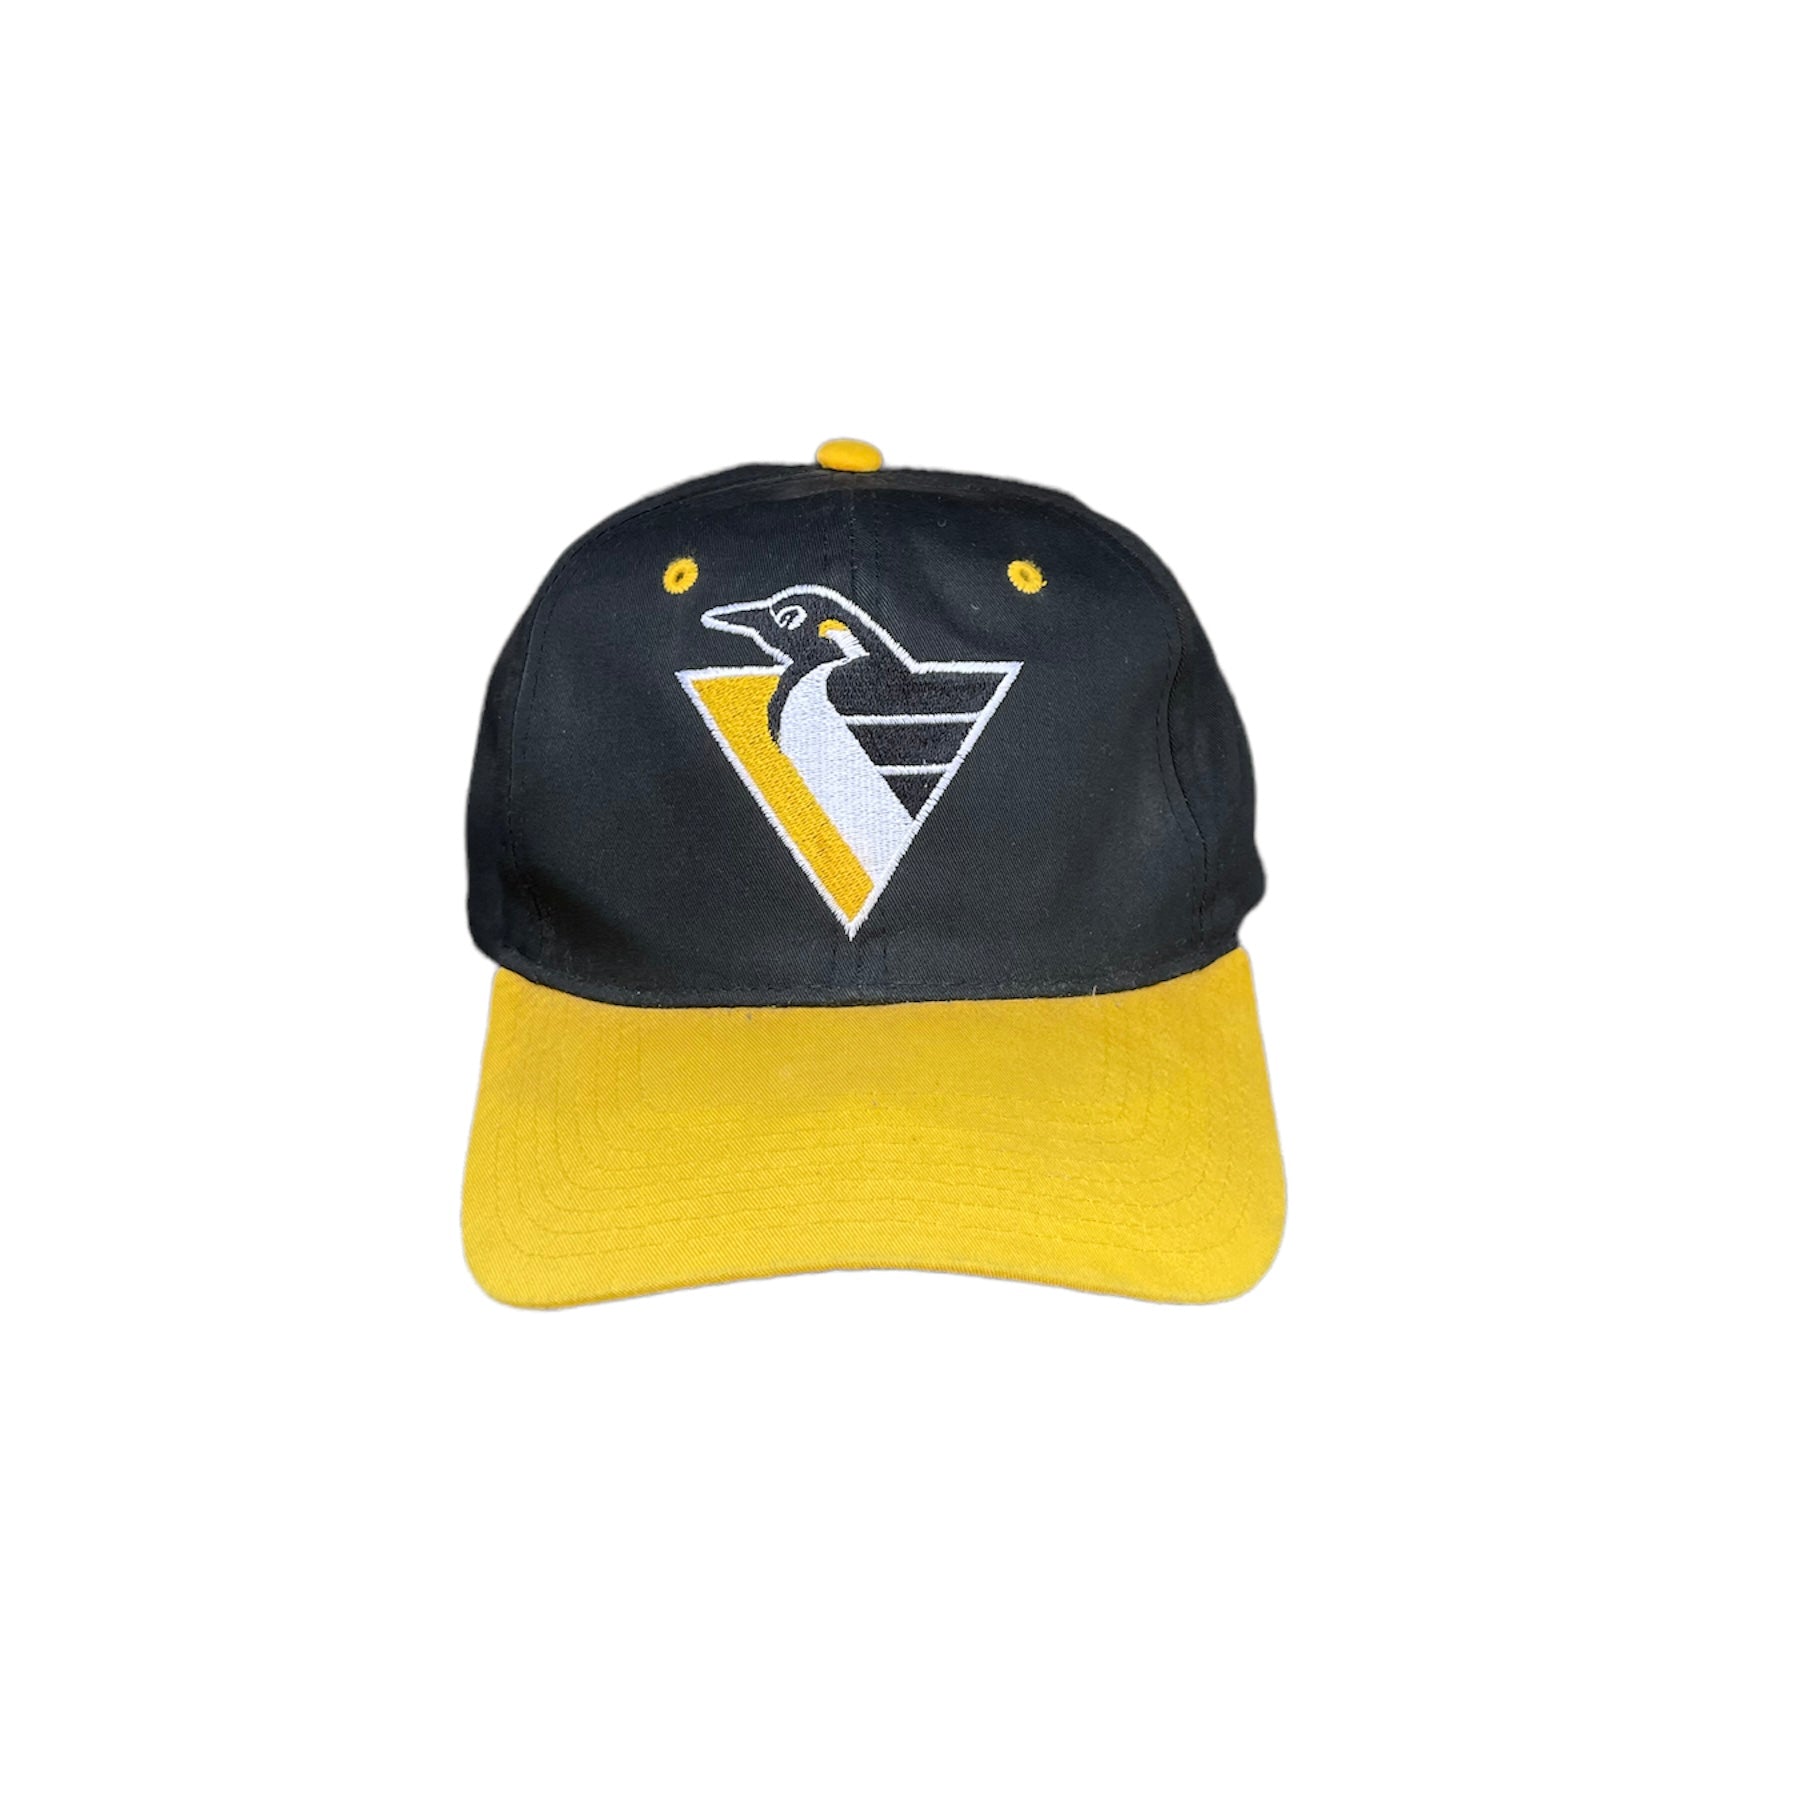 Vintage Starter Pittsburgh Penguins Strapback Hat